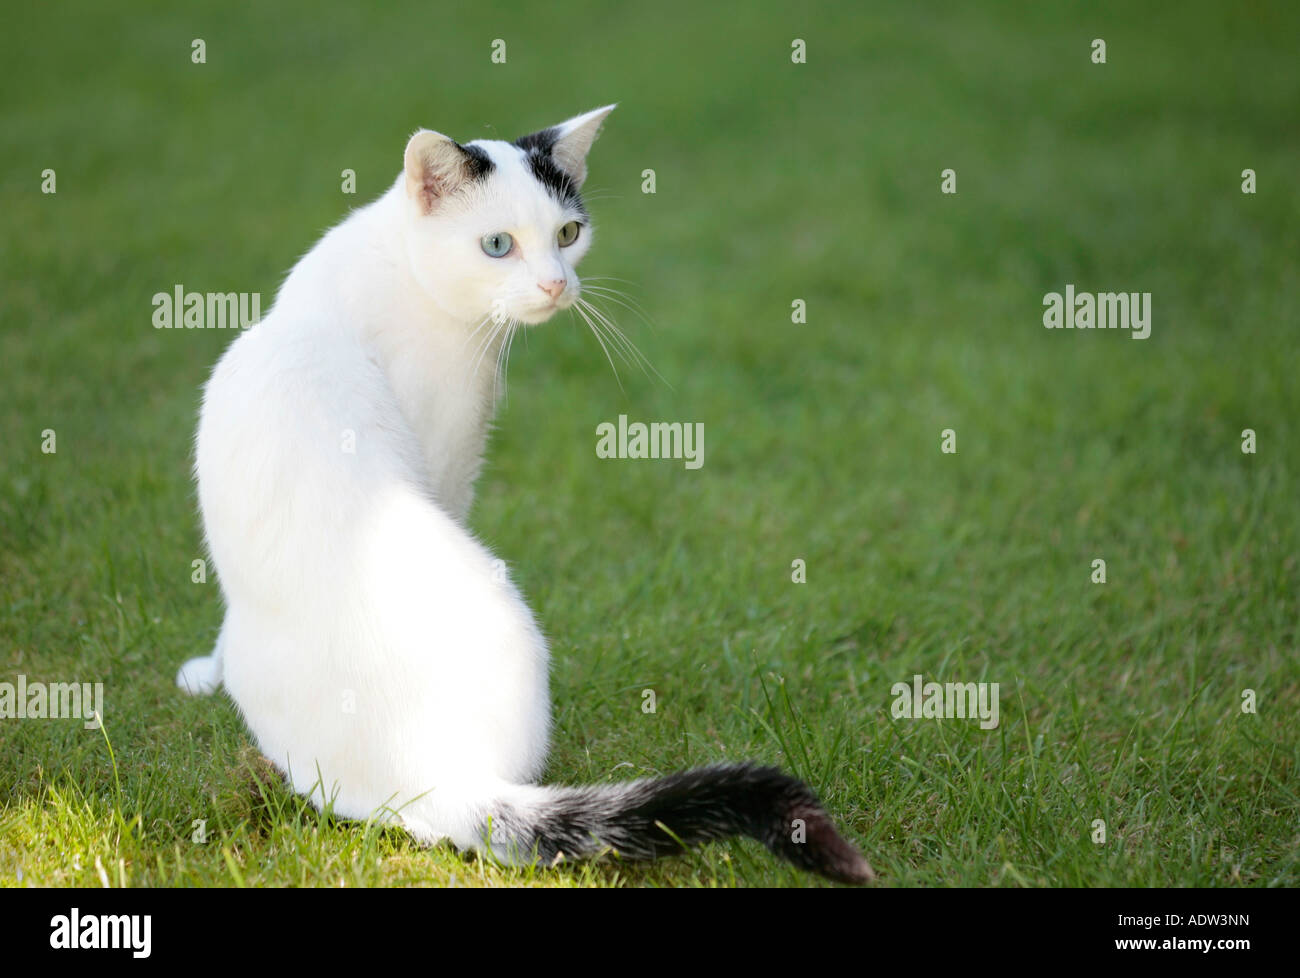 Giovane gatto bianco e nero con occhi dispari (Felis catus) che si allena sull'erba Foto Stock